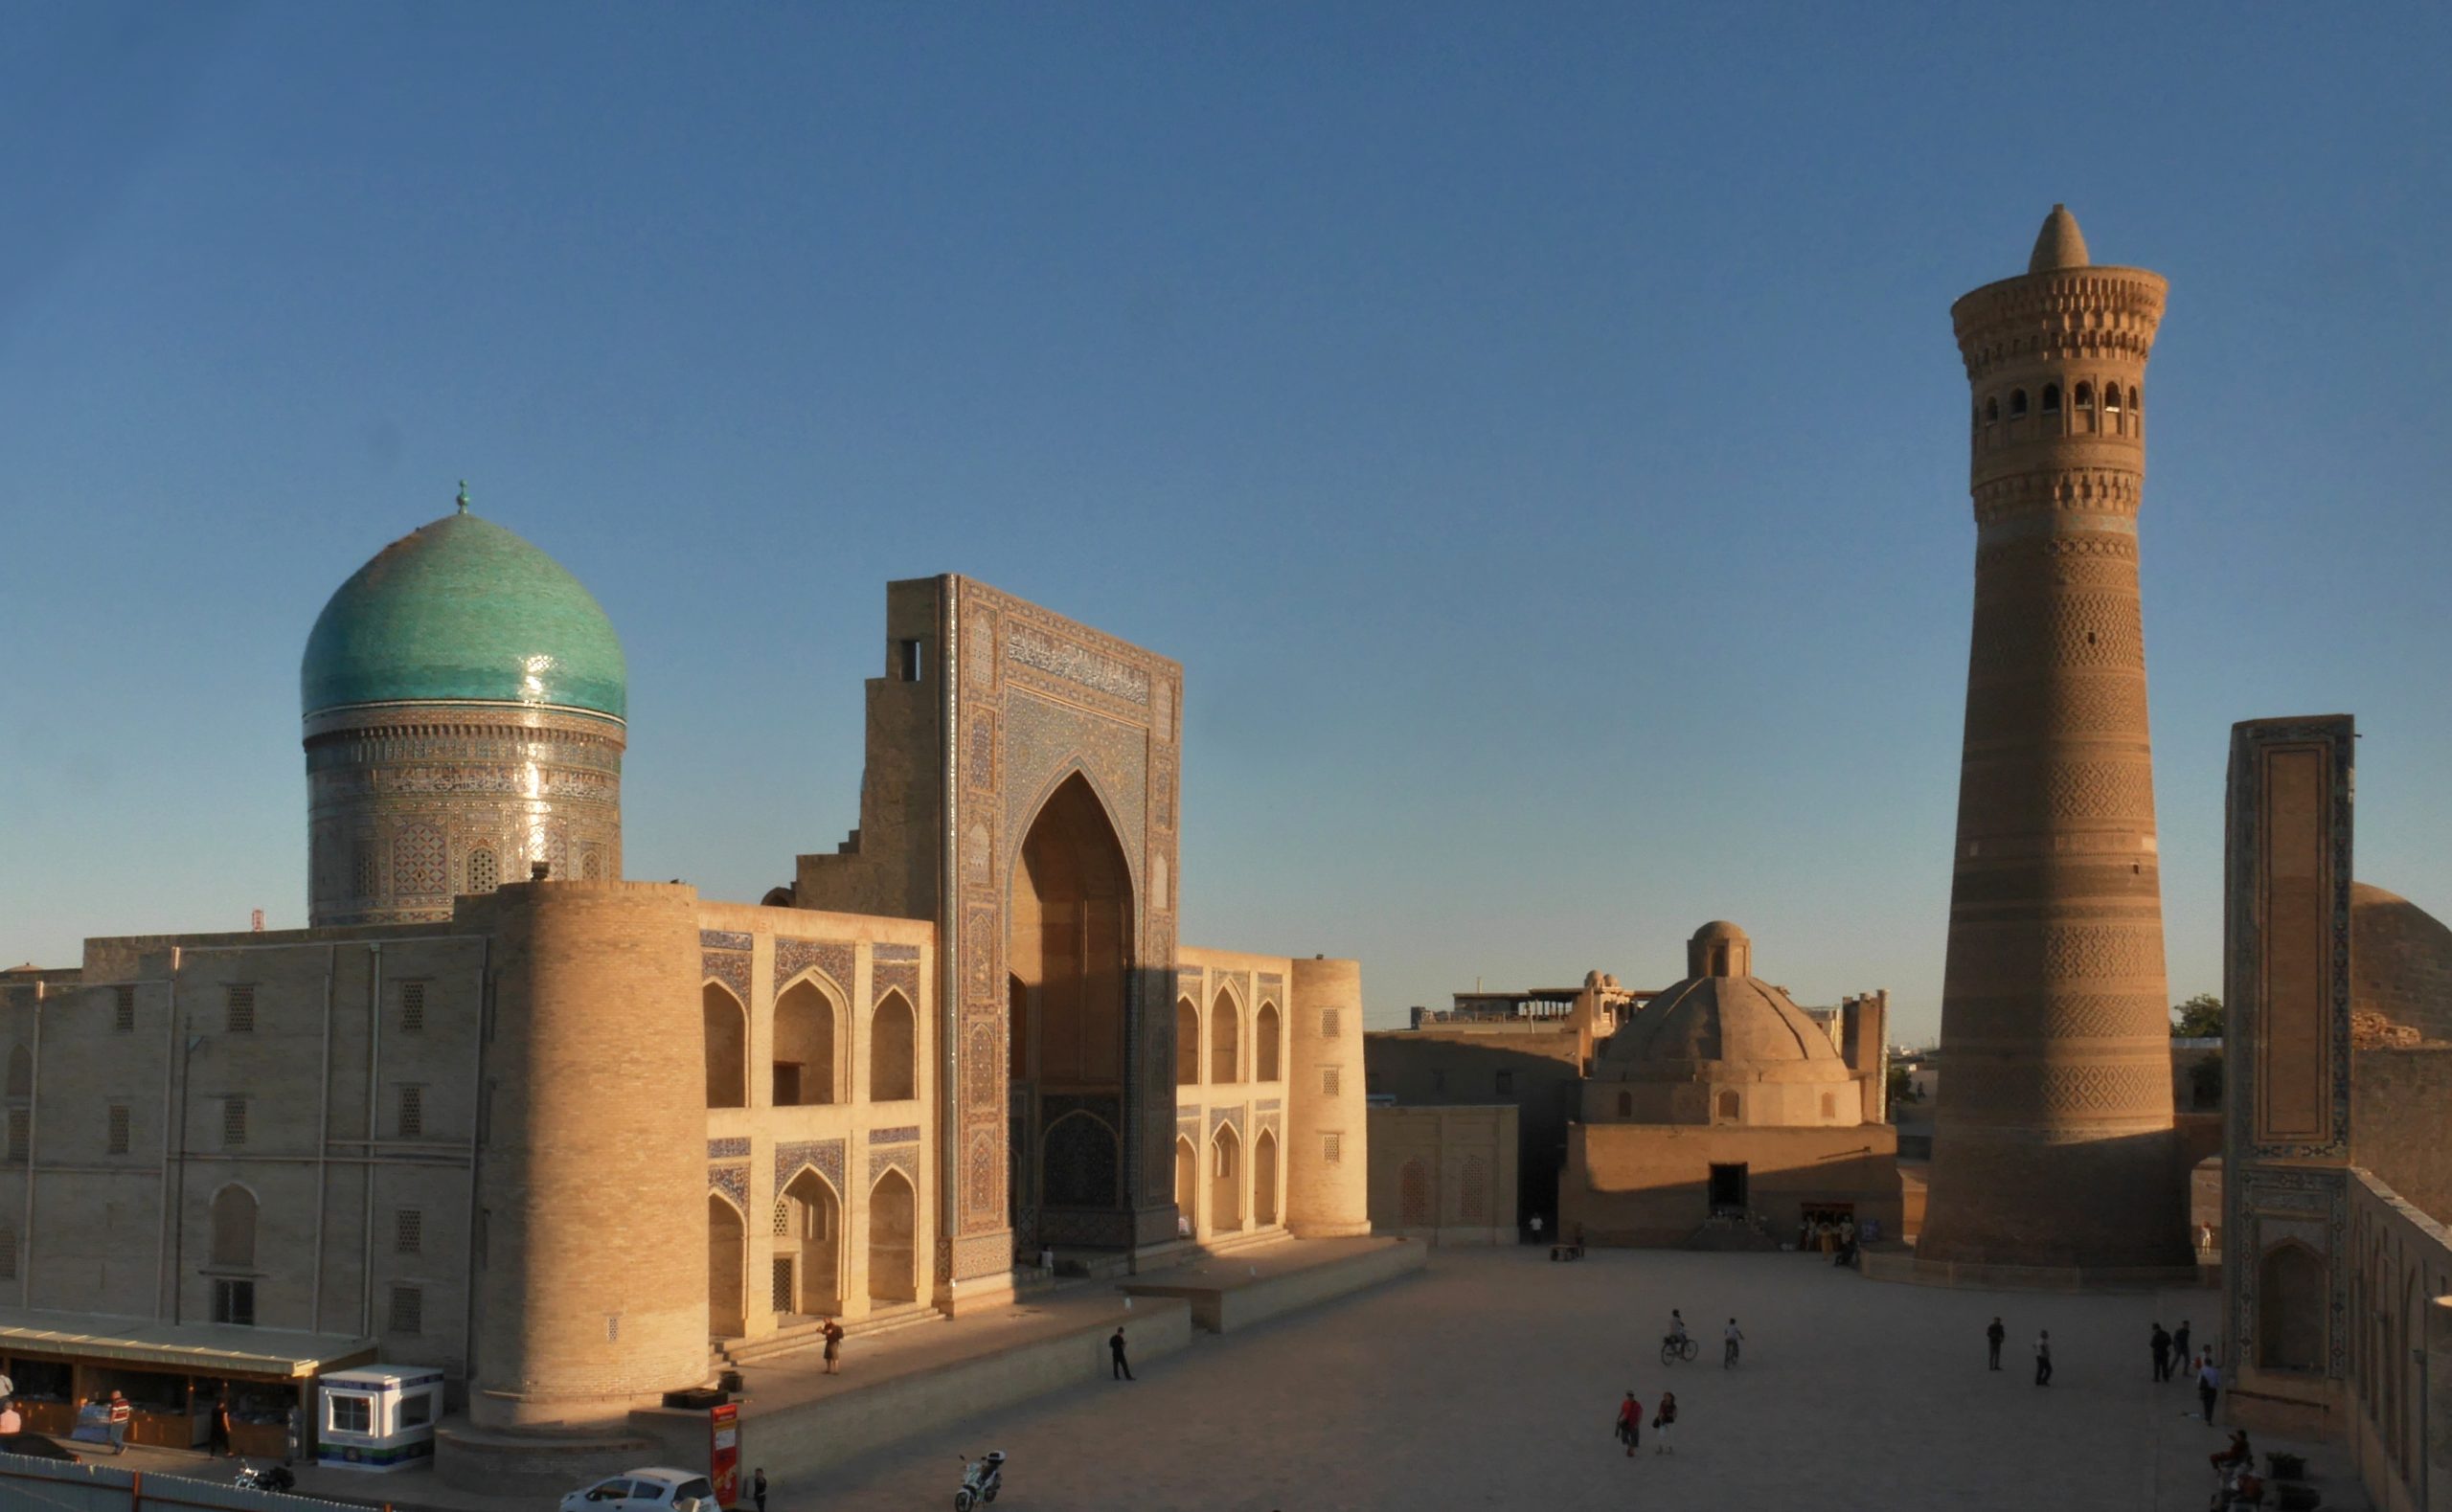 Poi Kalan Mosque and 12th C. Tower, Bukhara, Uzbekistan